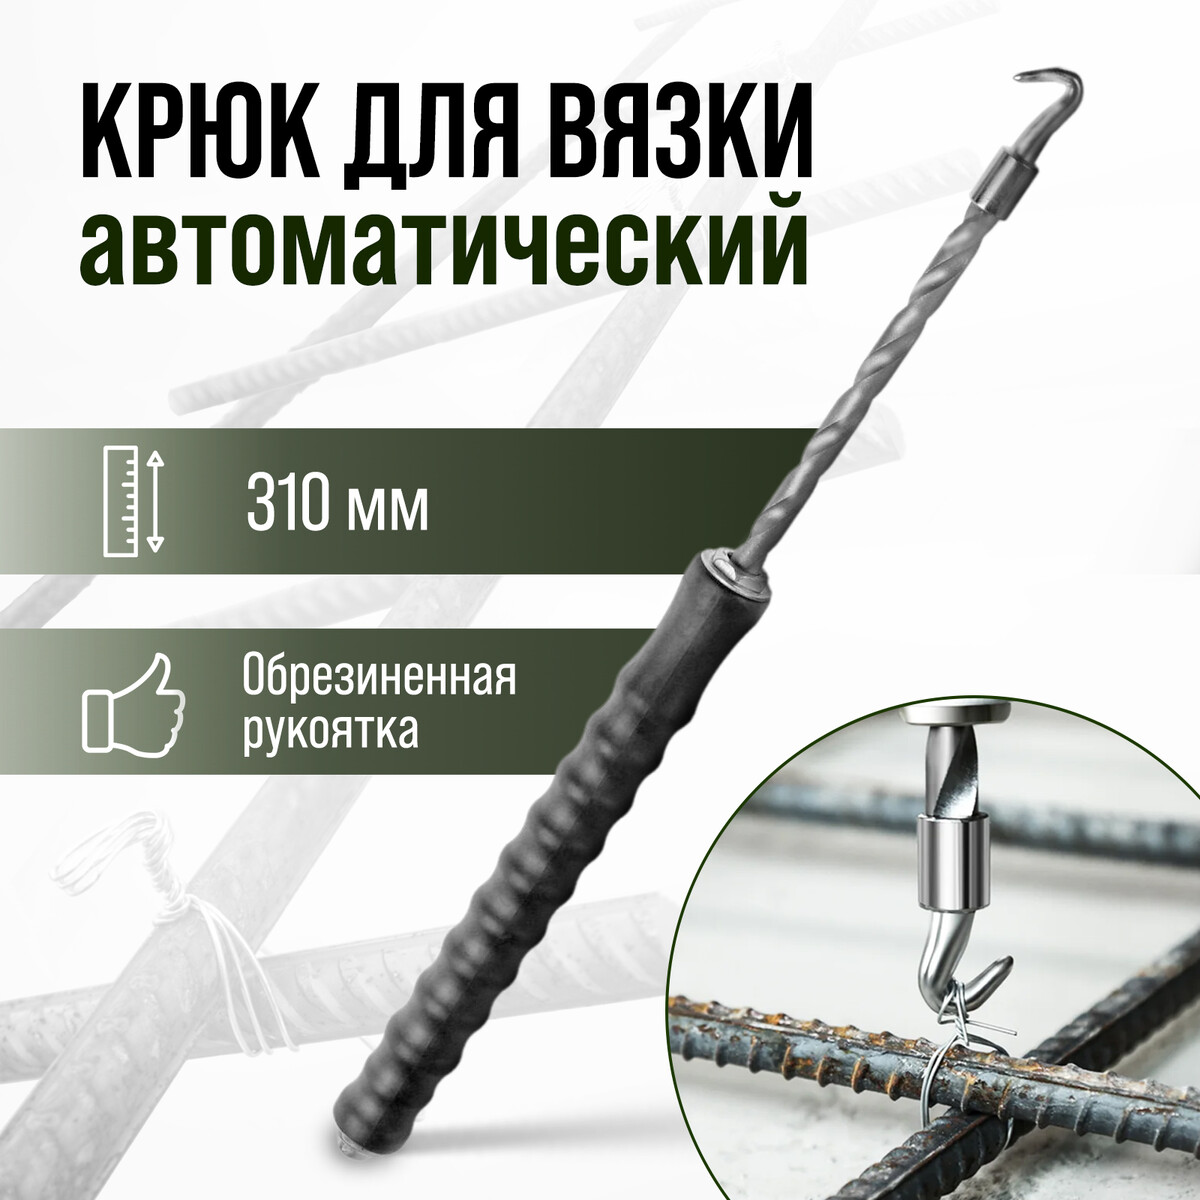 Крюк для вязки арматуры тундра, автоматический, обрезиненная рукоятка, 310 мм отвертка держатель тундра обрезиненная рукоятка изменяемая длина